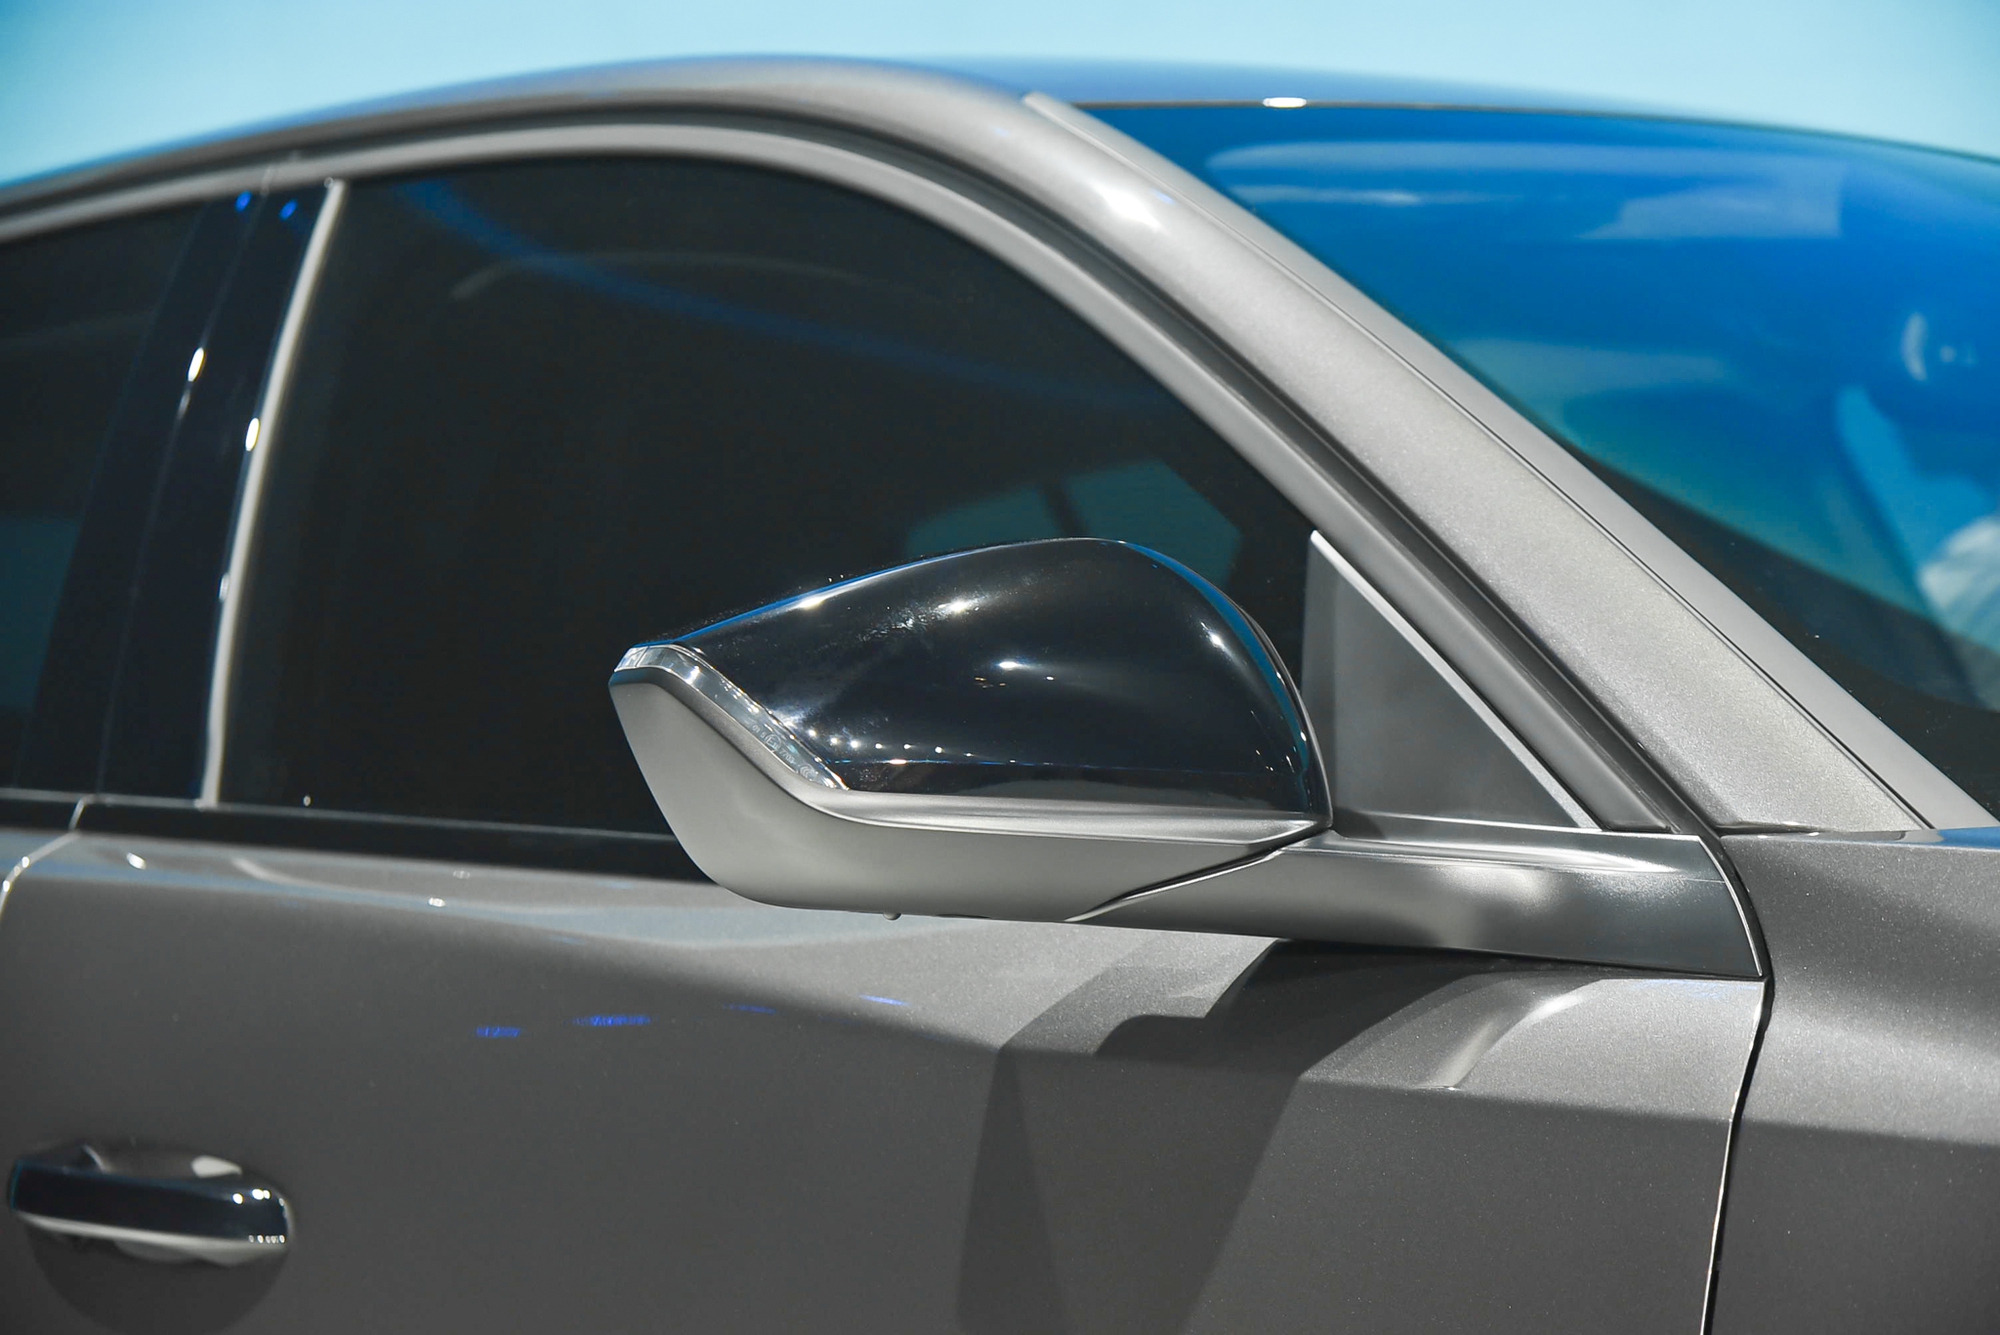 Chi tiết Peugeot 408 bản tiêu chuẩn giá 999 triệu đồng: Rẻ hơn bản cao nhất 250 triệu, vẫn có hỗ trợ người lái - Ảnh 17.